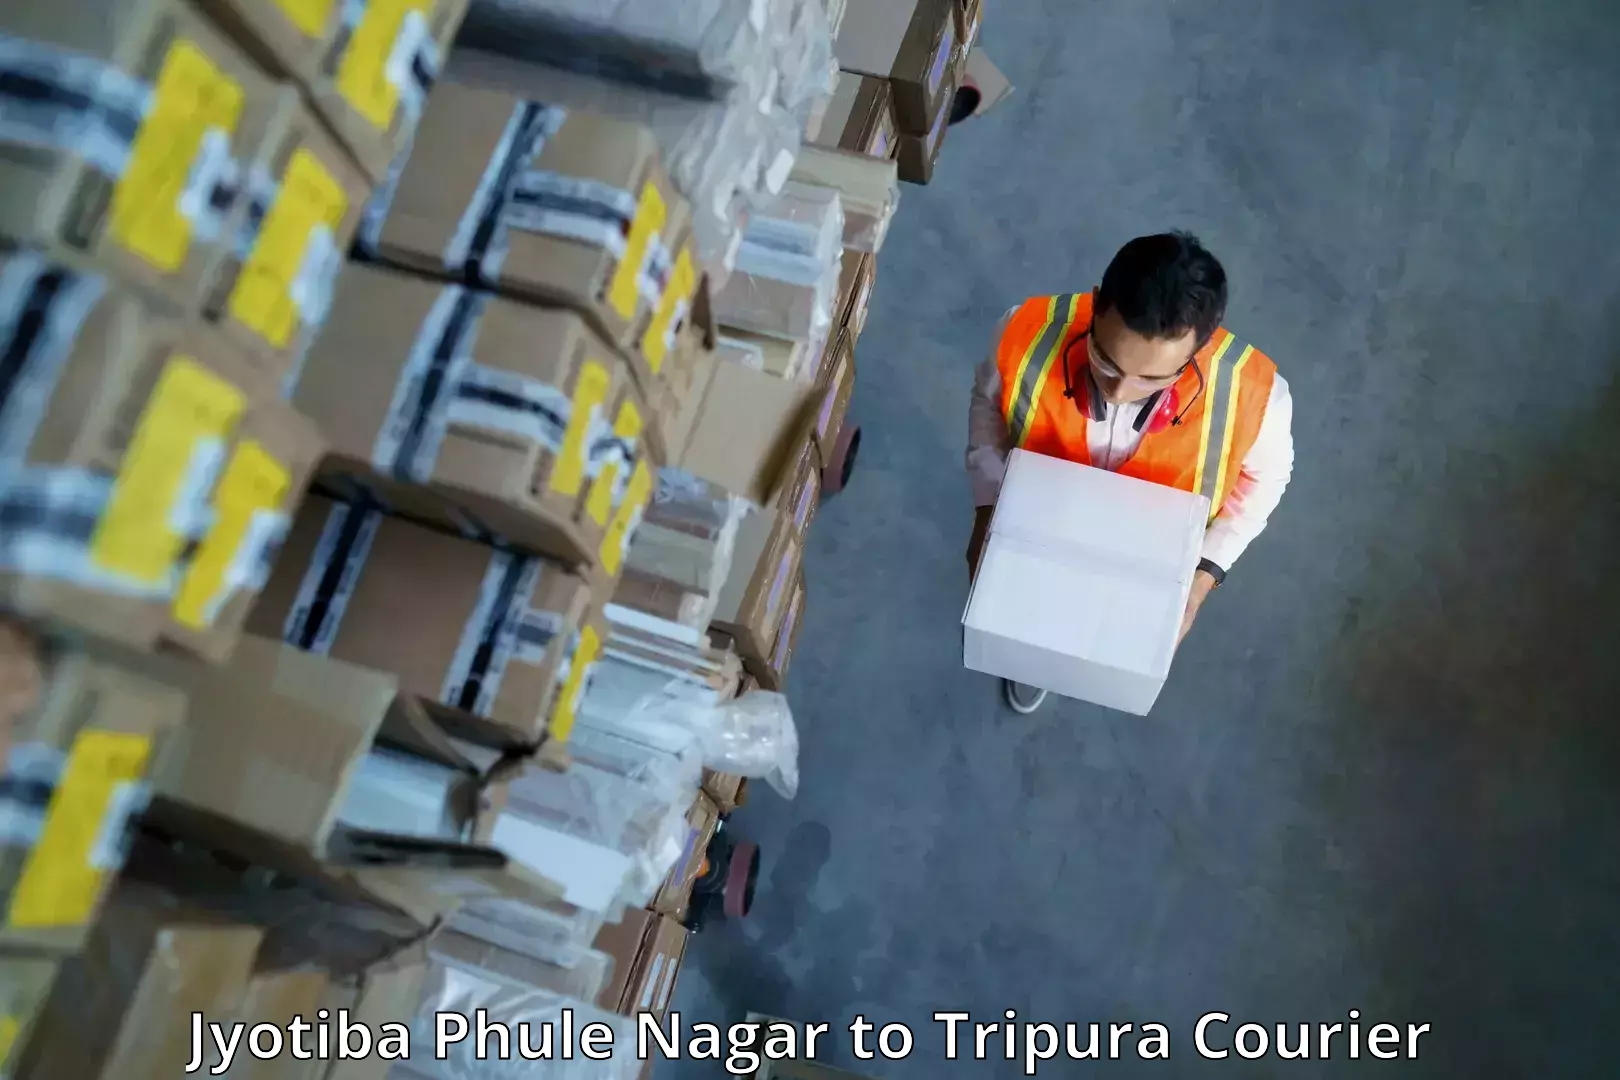 Smart shipping technology Jyotiba Phule Nagar to Manu Bazar